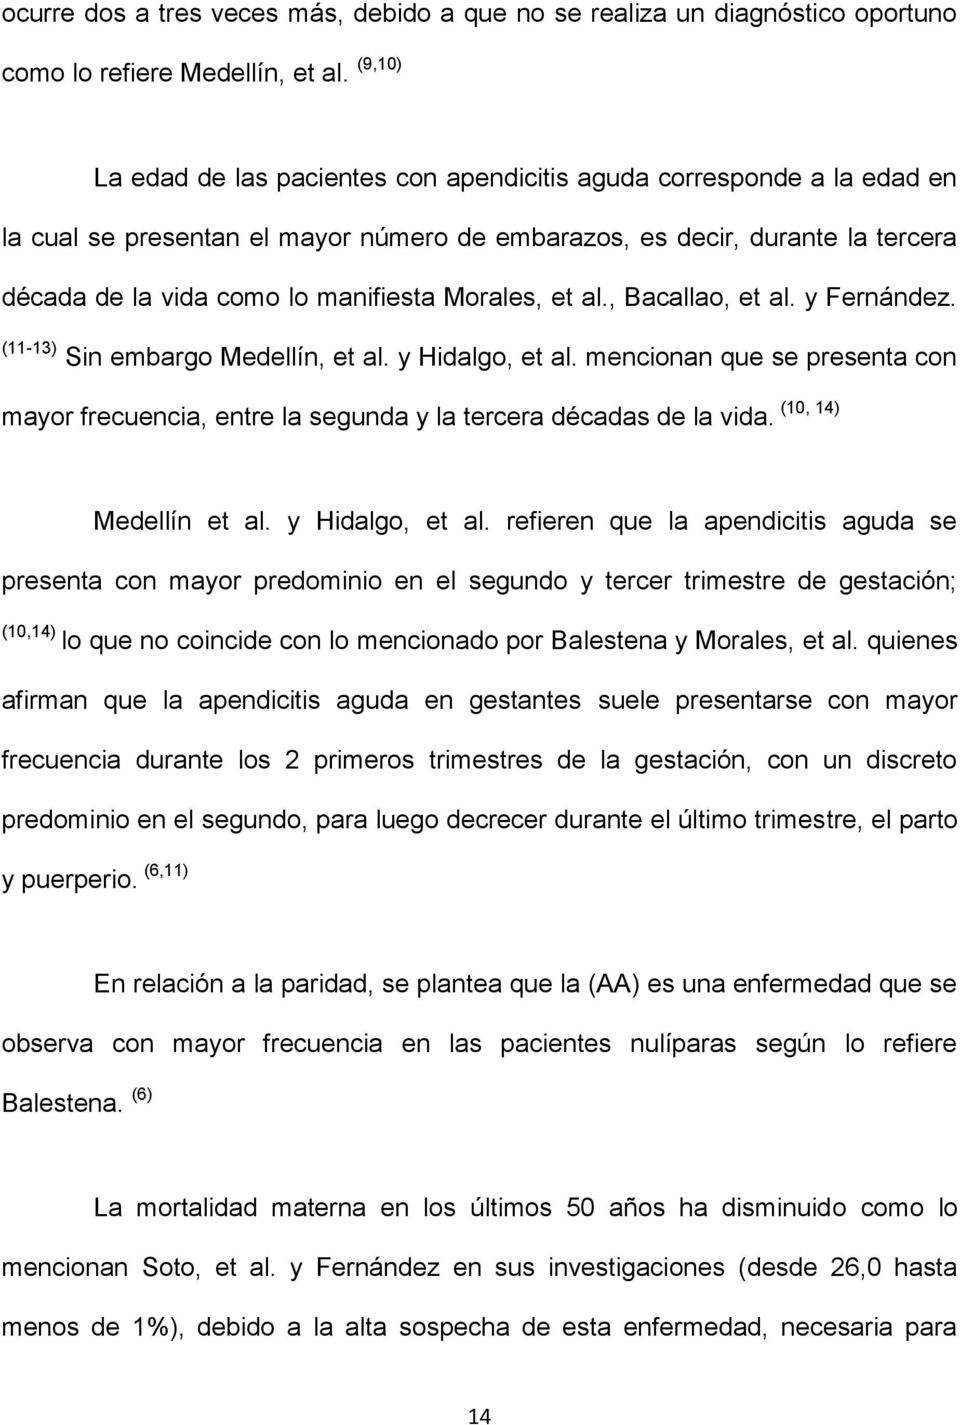 Morales, et al., Bacallao, et al. y Fernández. (11-13) Sin embargo Medellín, et al. y Hidalgo, et al. mencionan que se presenta con mayor frecuencia, entre la segunda y la tercera décadas de la vida.